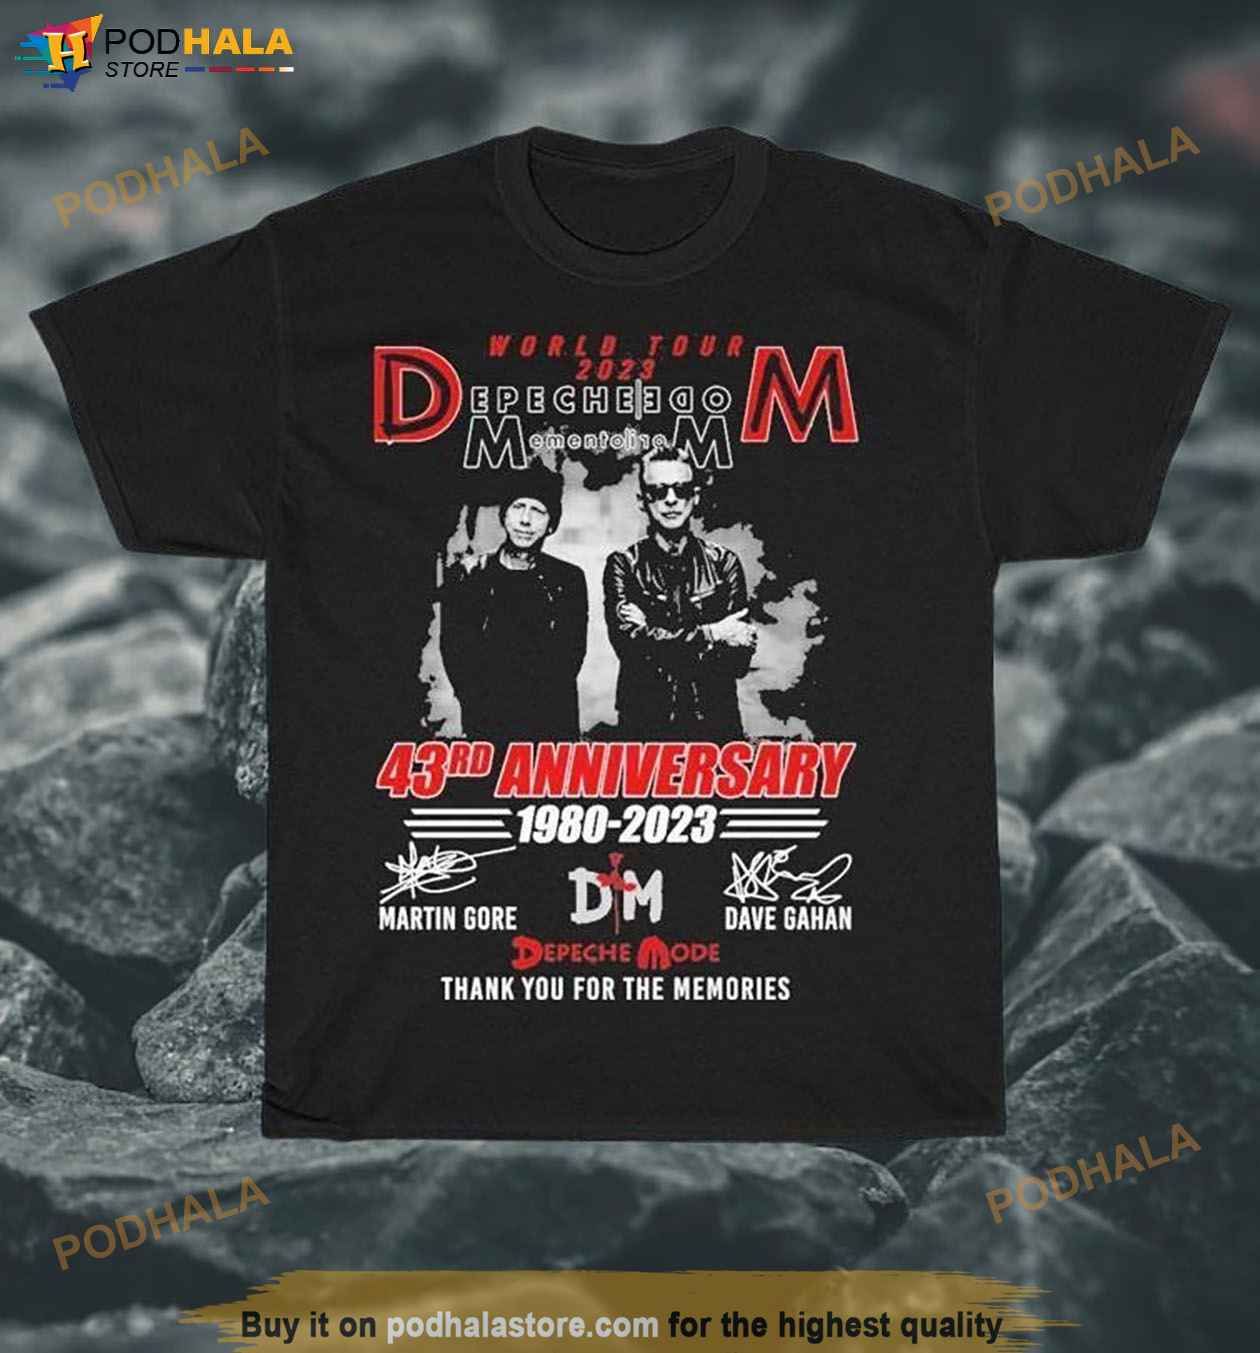 World Tour 2023 Depeche Mode 43rd Anniversary 1980-2023 Shirt, Depeche ...